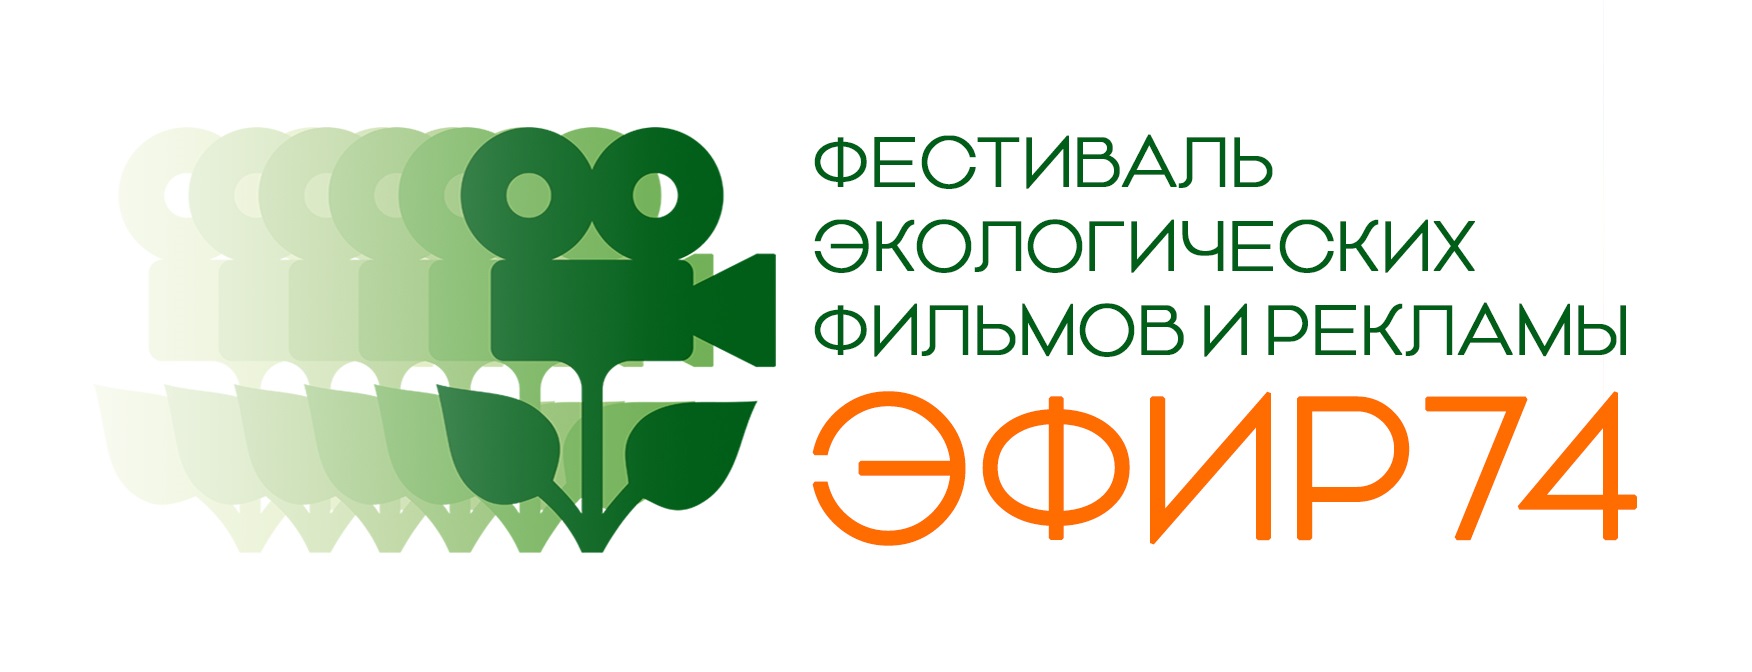 Челябинцев приглашают на крупнейший экологический фестиваль Южного Урала